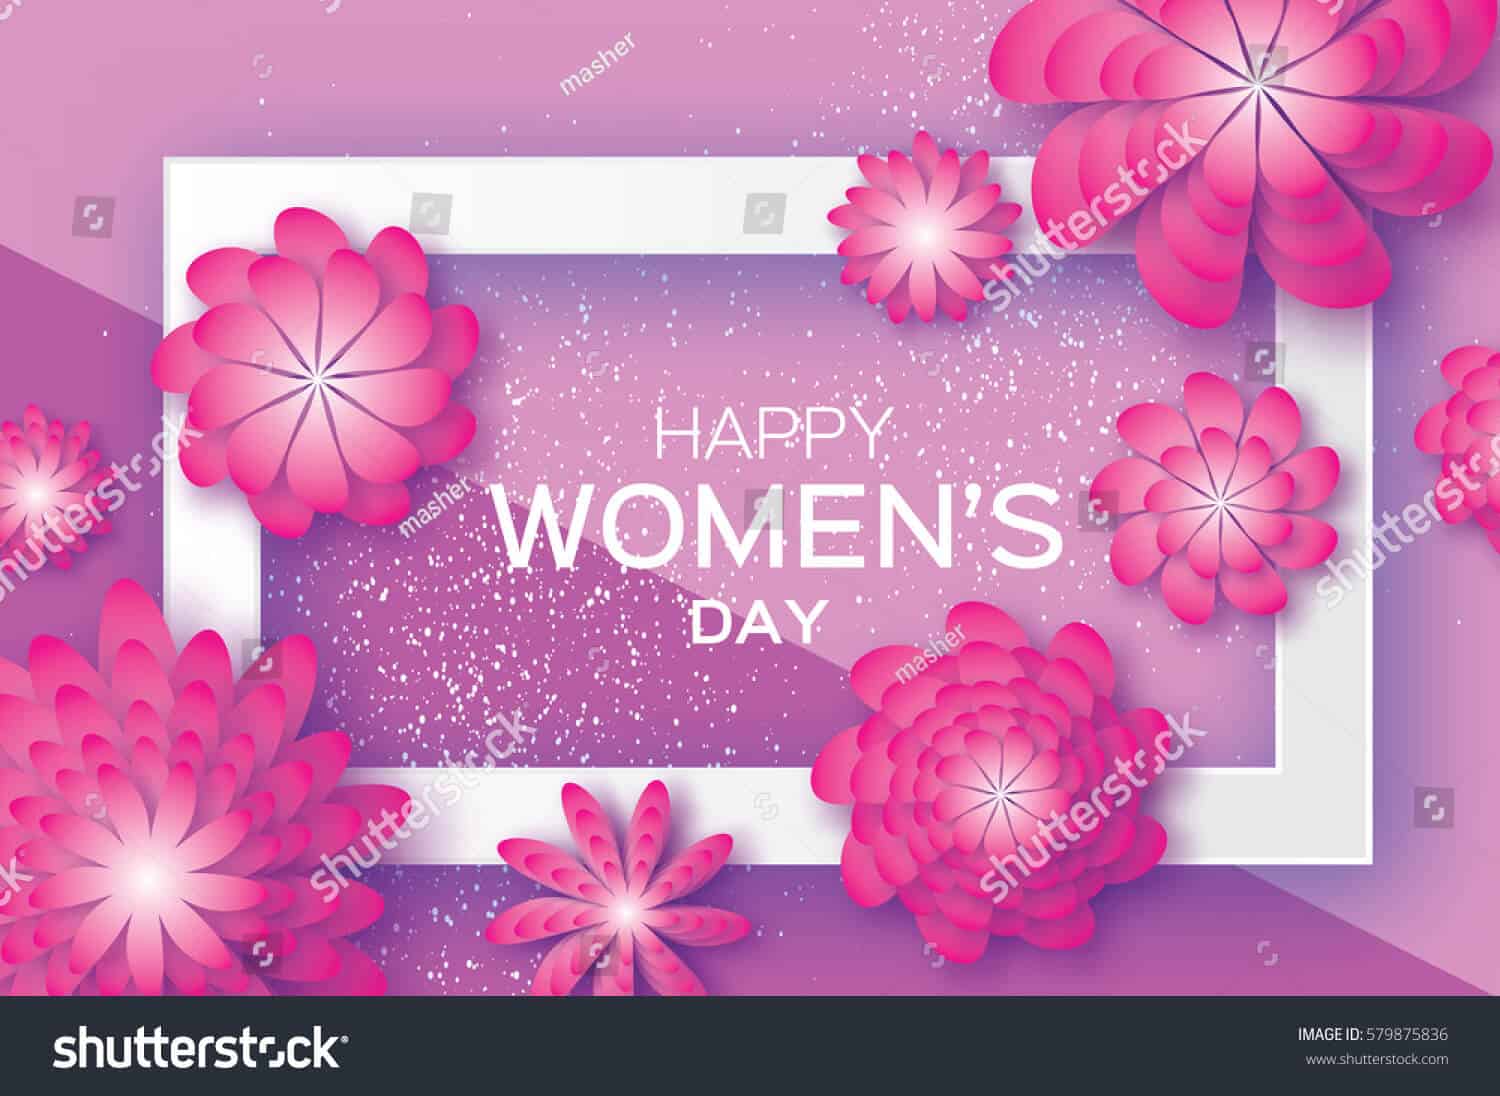 440 ngàn hình ảnh ngày quốc tế phụ nữ 8/3 chất lượng cao trên Shutterstock